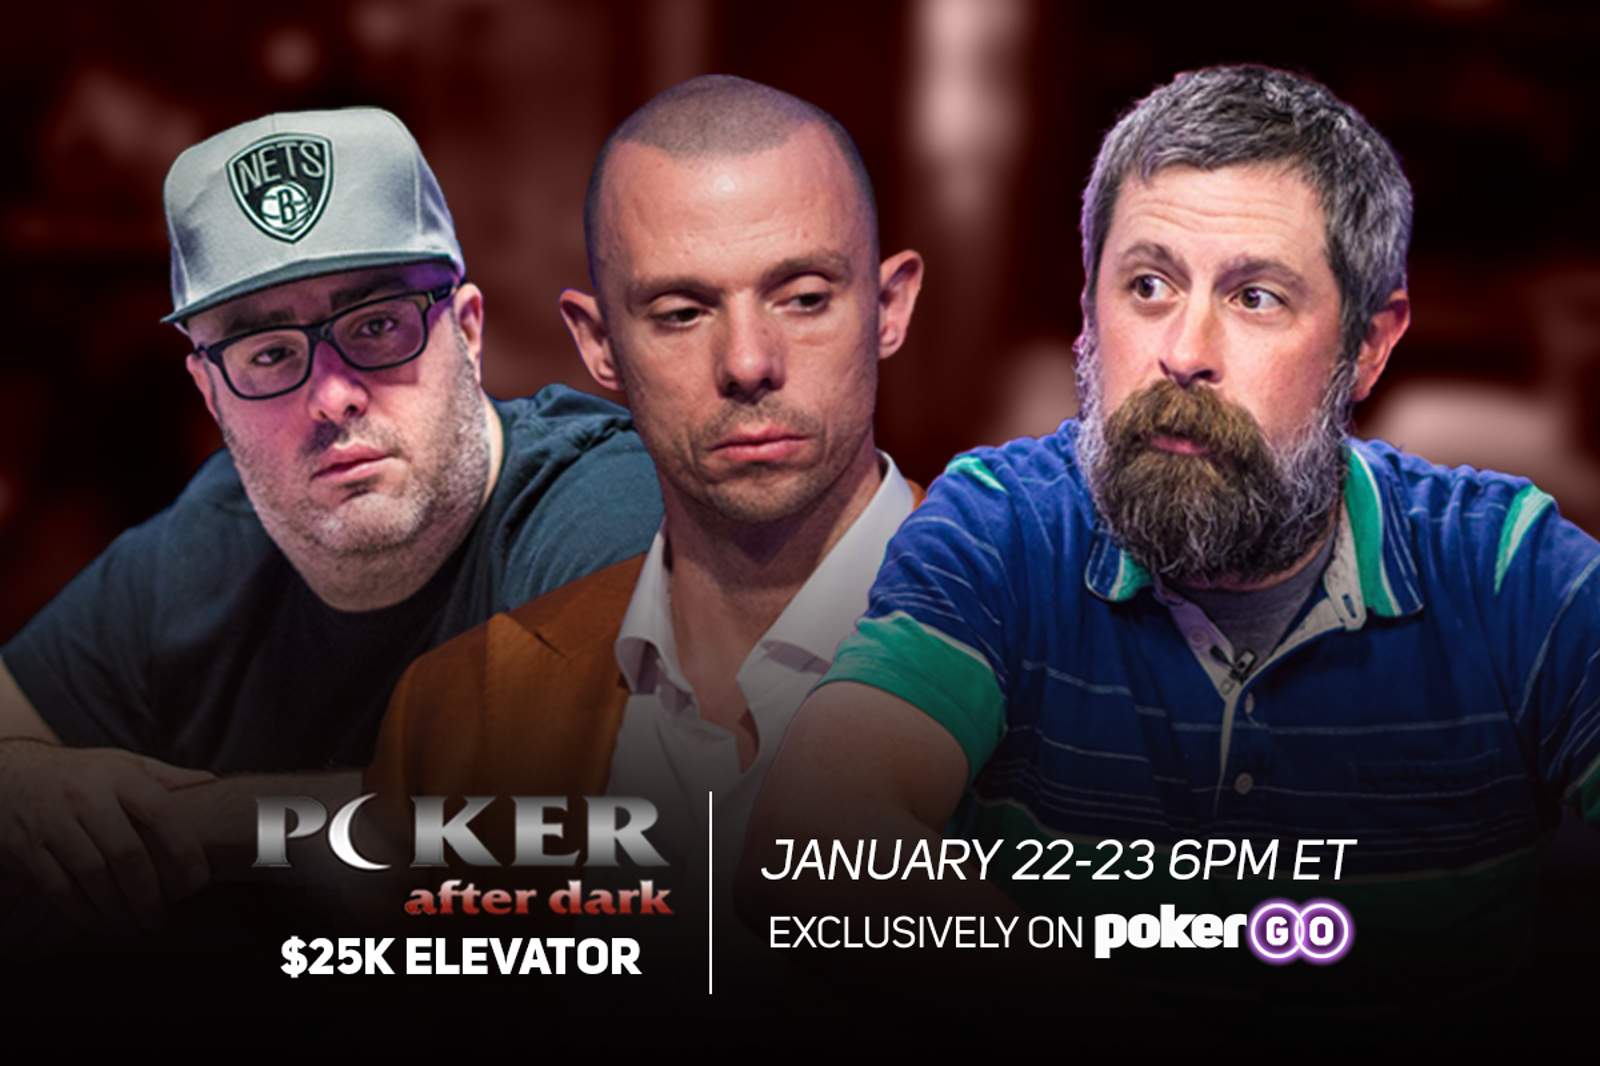 "$25K Elevator" Week Marks "Poker After Dark" Return